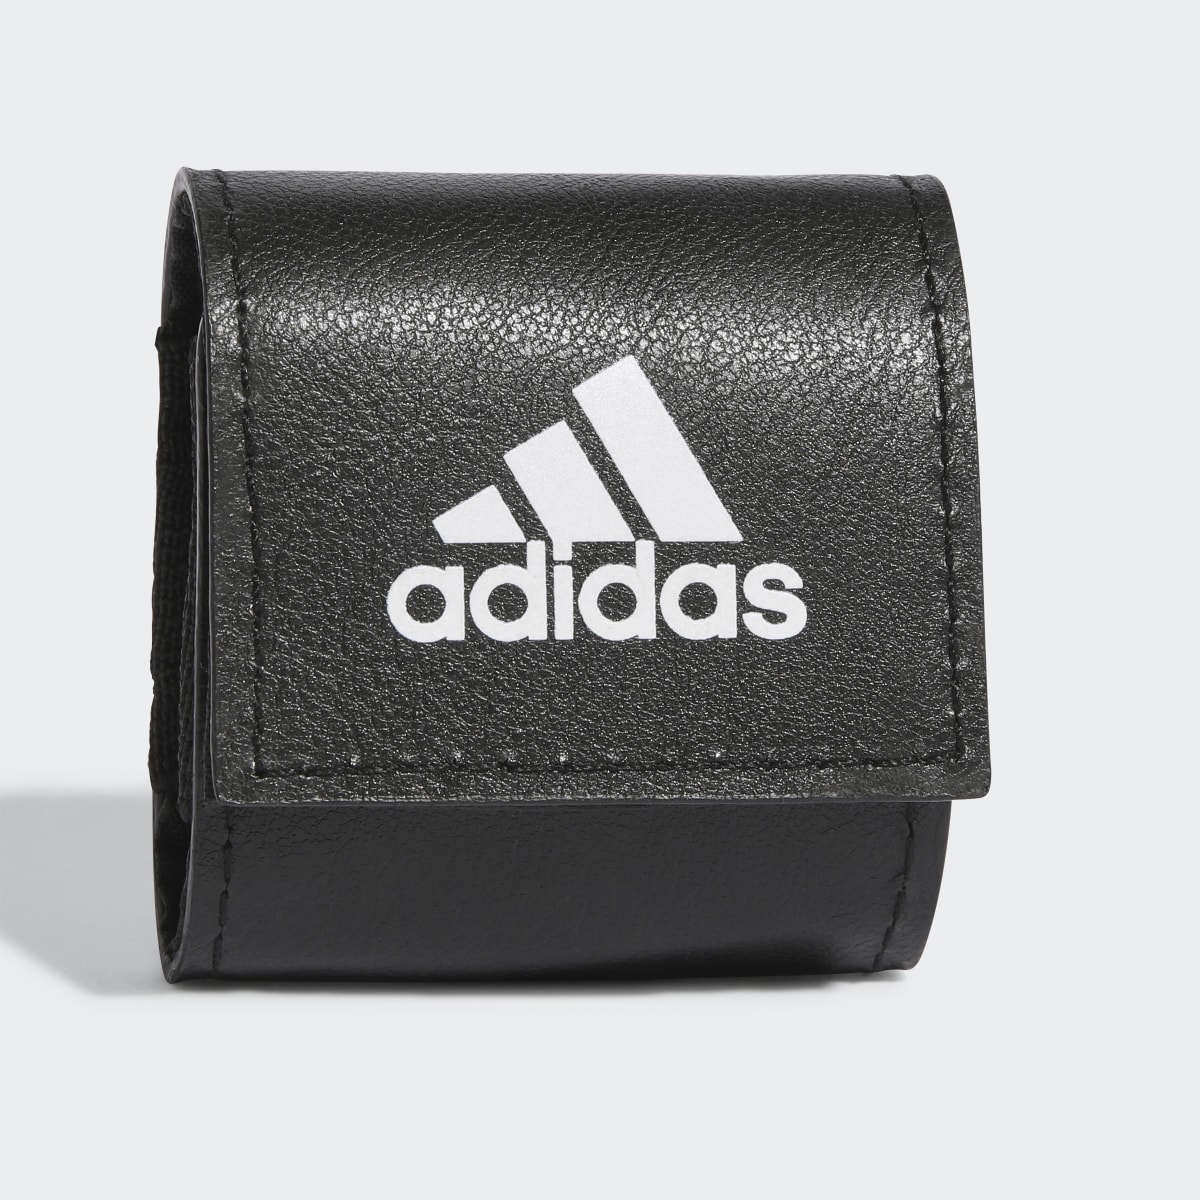 Adidas Essentials Tiny Earbud Bag. 6